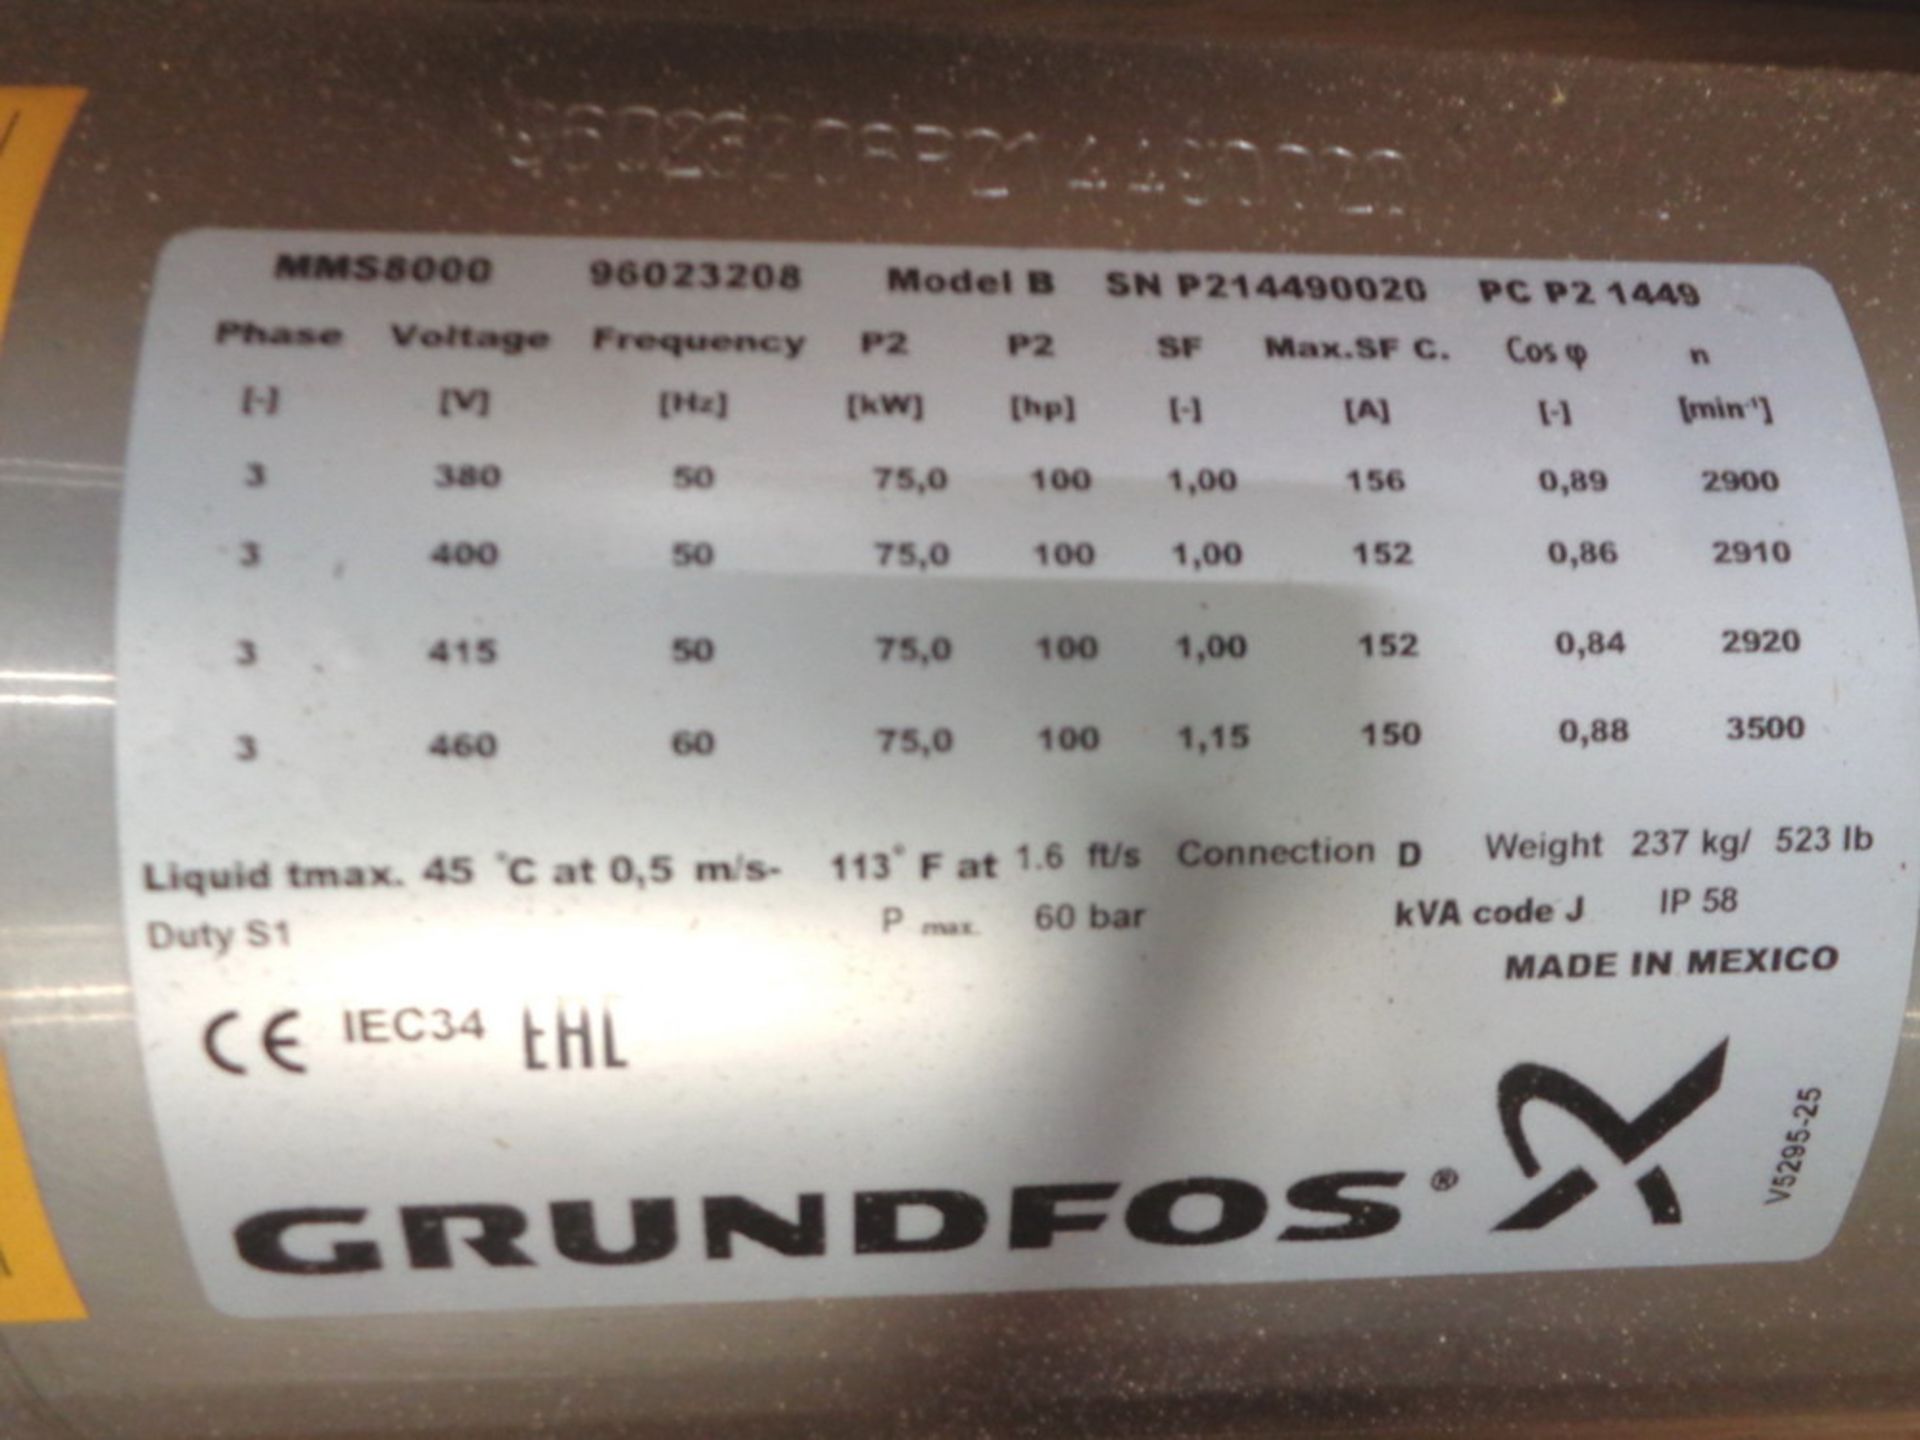 UNUSED Grundfos Stainless Steel Submersible 100 HP Motor, Model MMS 8000, Model B, S/N 96023208 - Image 3 of 5